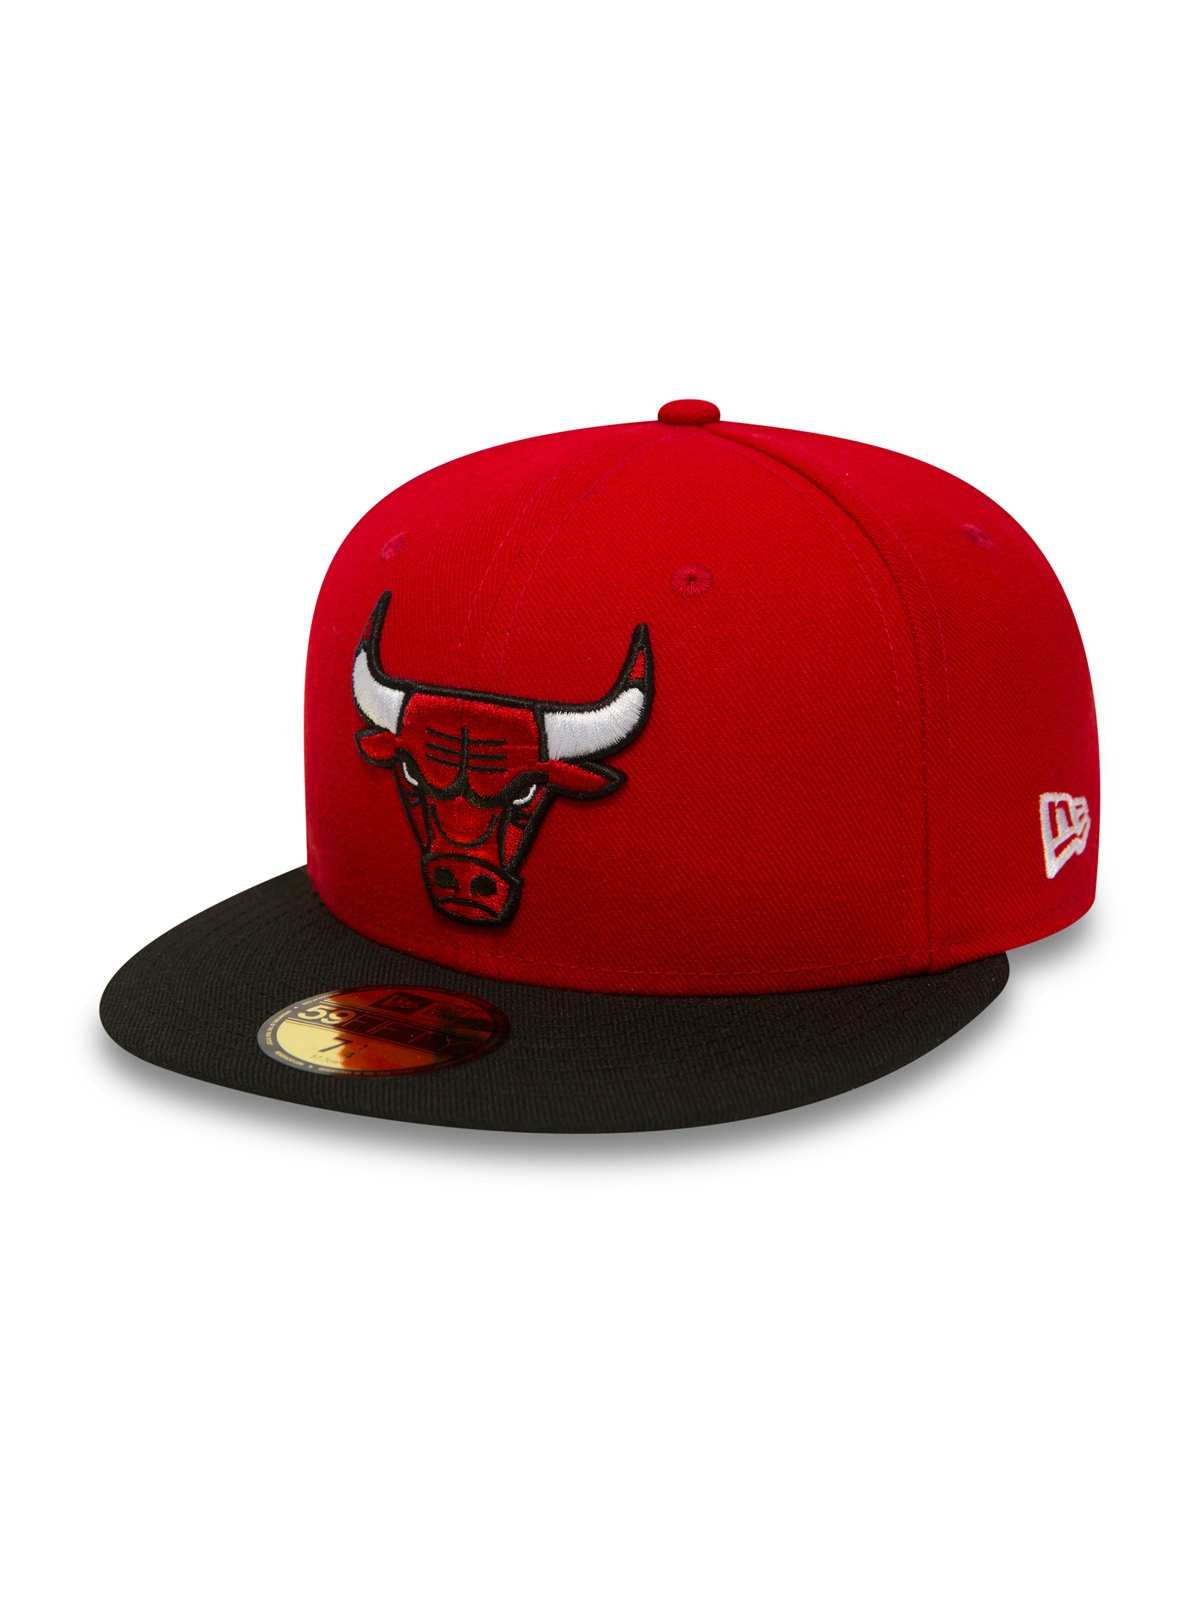 New Era Nba Basic Chicago Bulls Caps Red 4